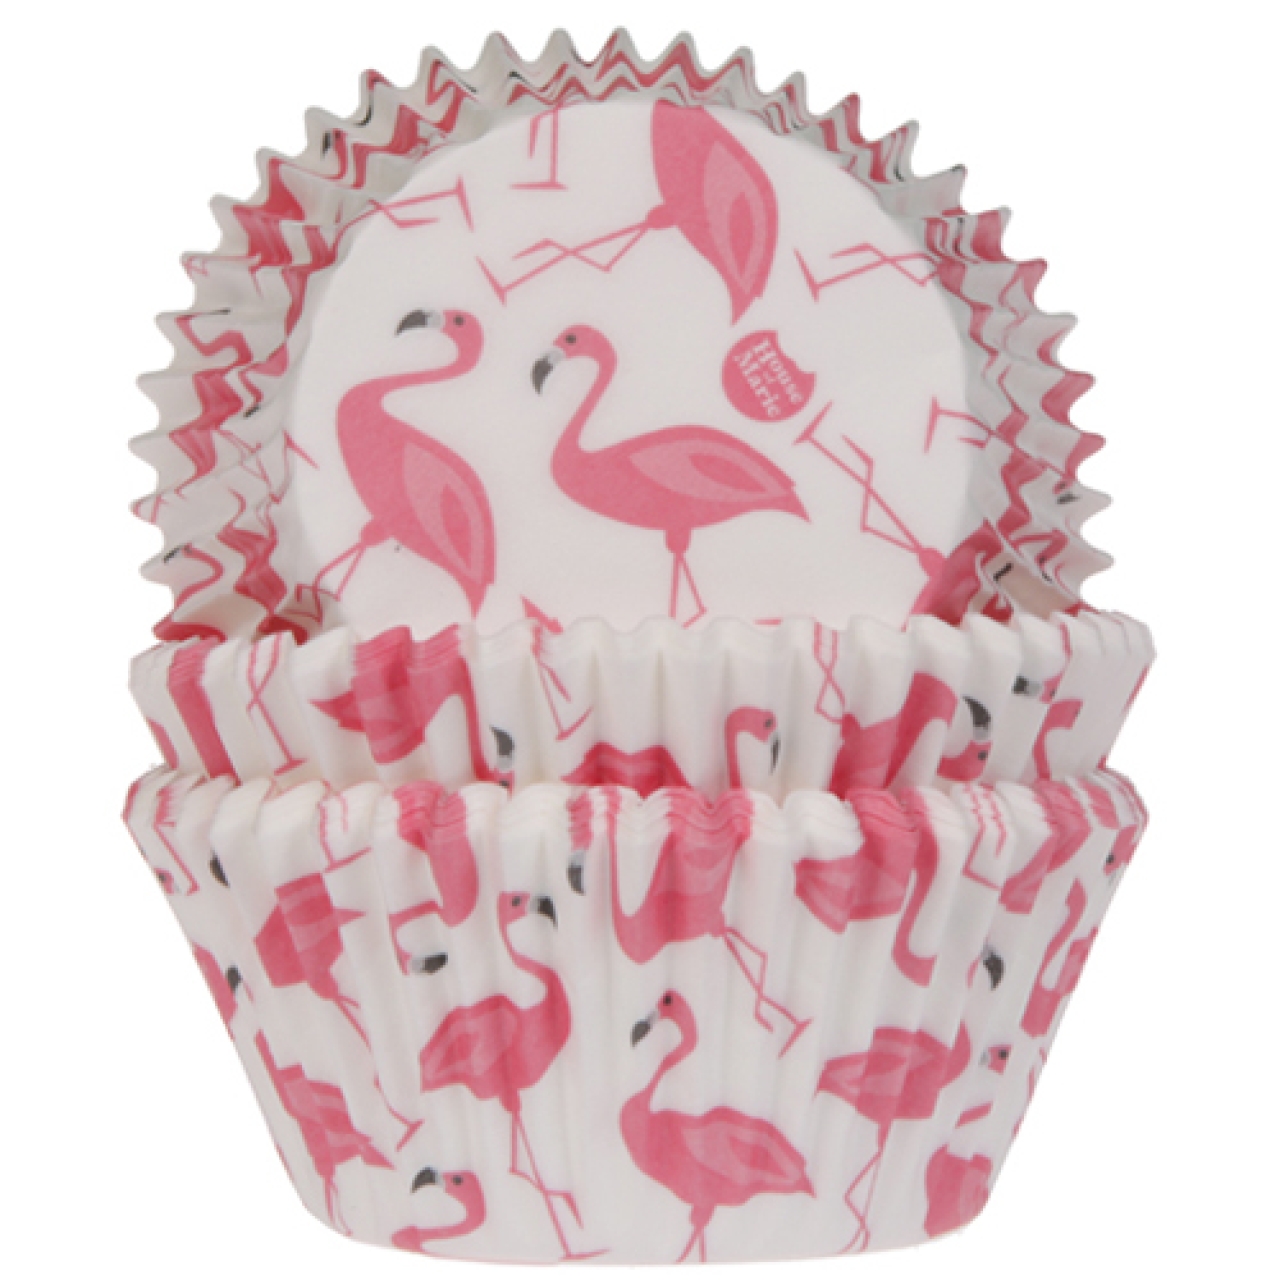 Muffinförmchen mit Flamingo Motiv